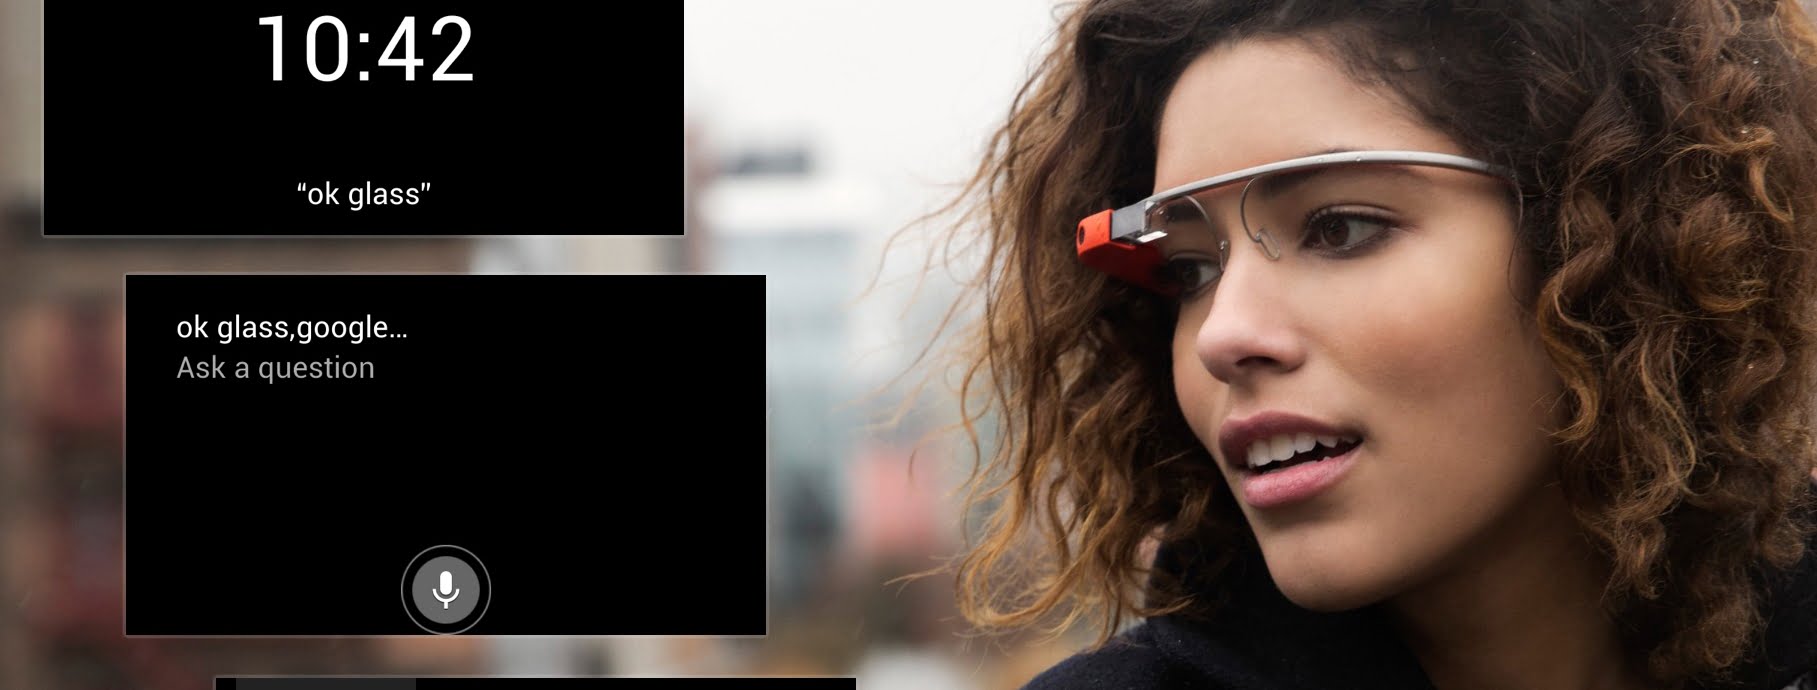 Google Glass Ui Leak Hero1 E1412894349805 مجلة نقطة العلمية